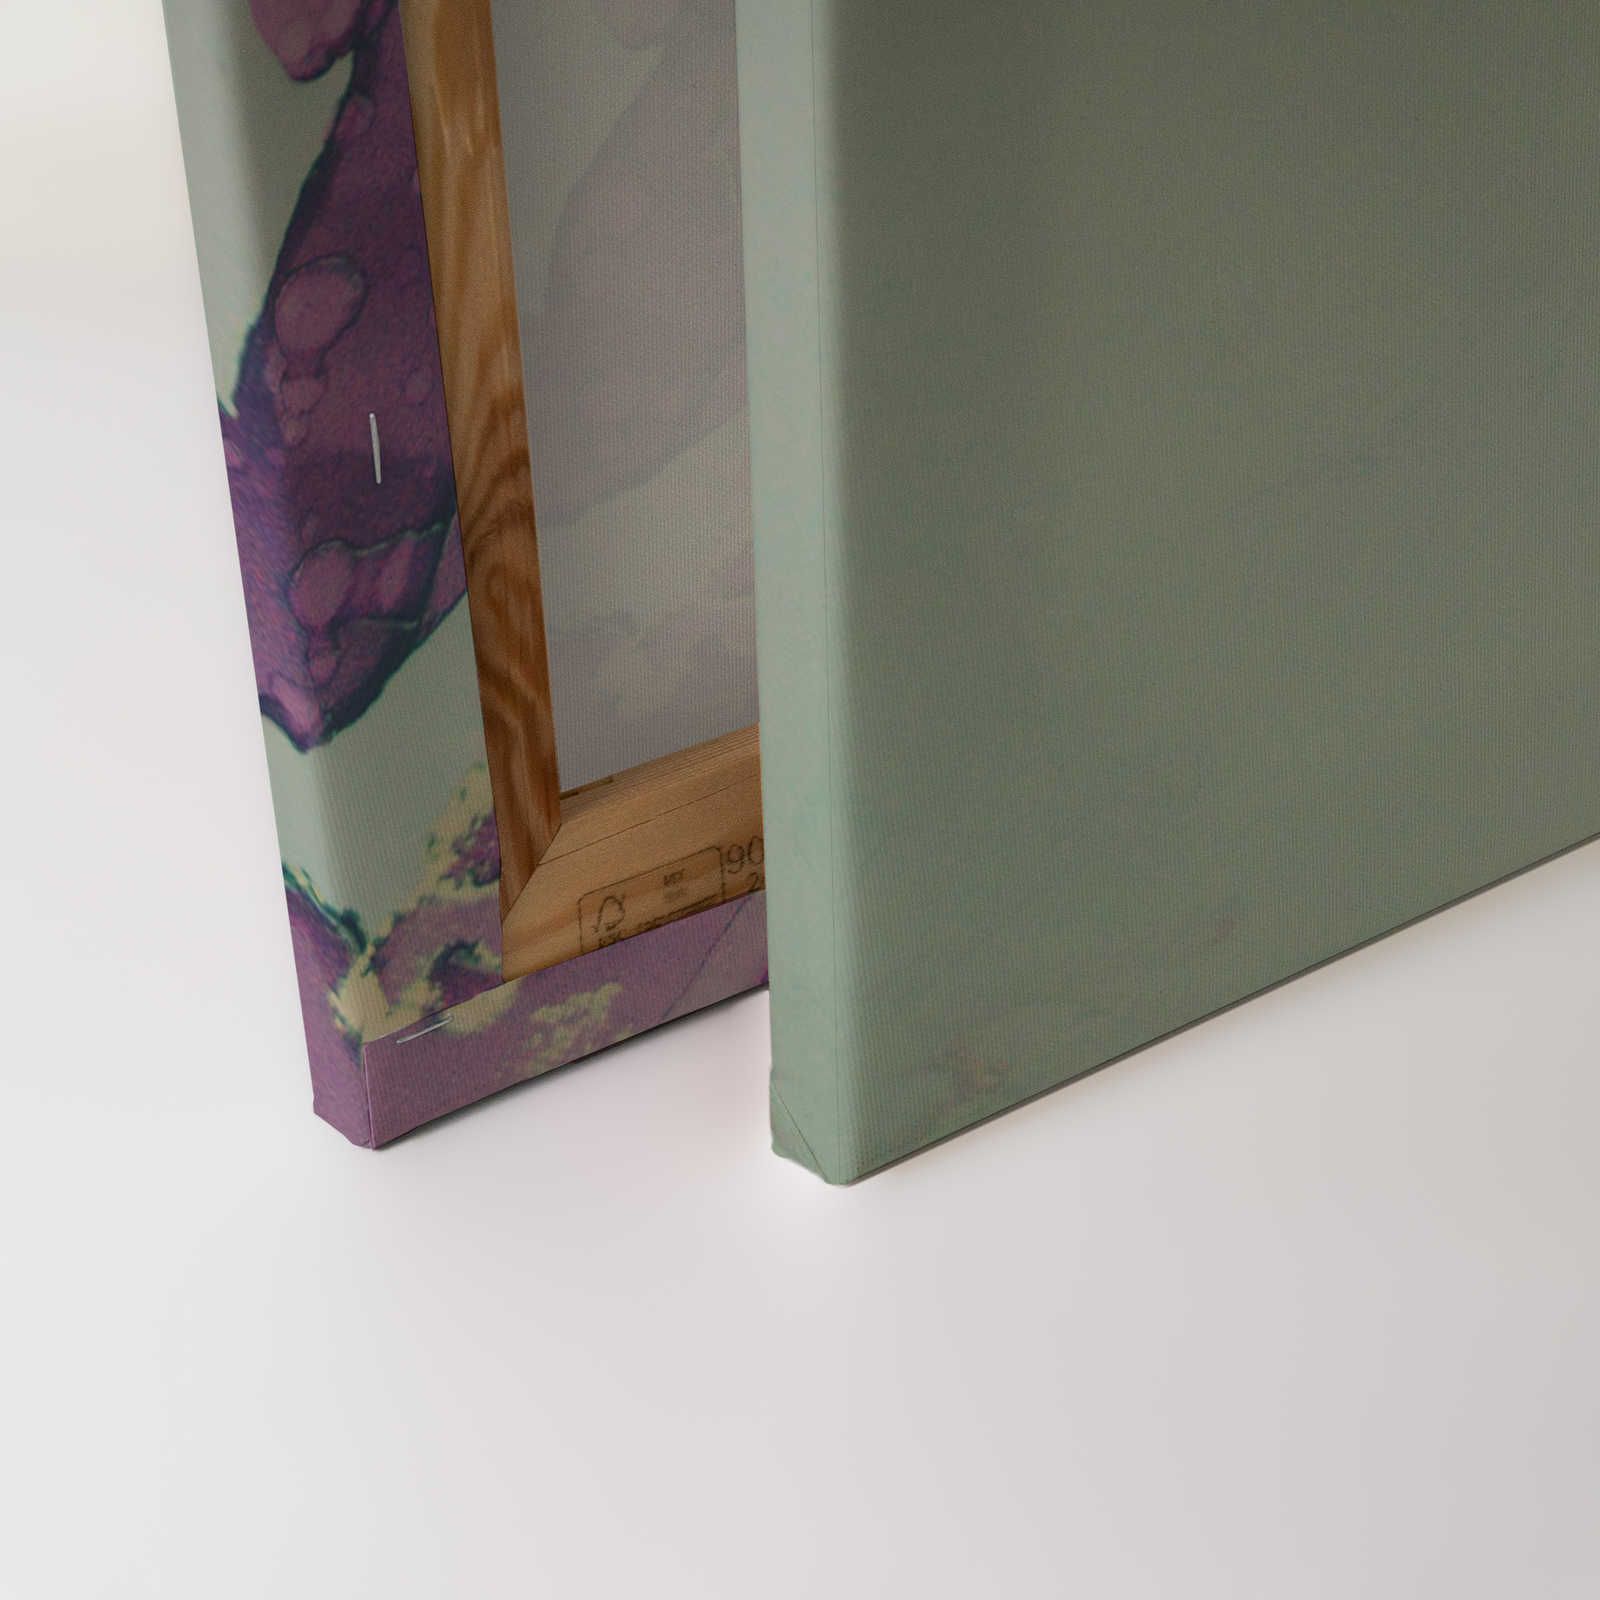             Toiles acryliques Style Visage de femme en turquoise et violet - 0,90 m x 0,60 m
        